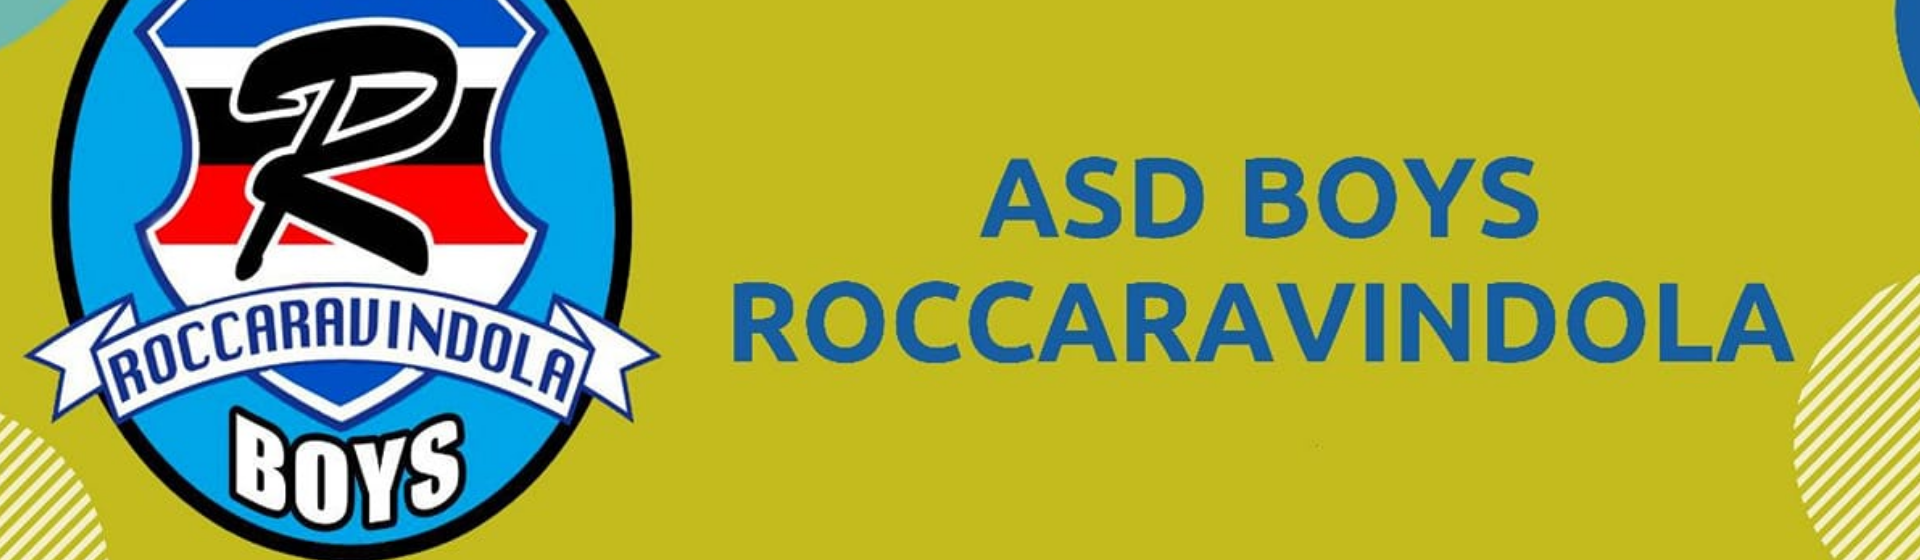 ASD Boys Roccaravindola header